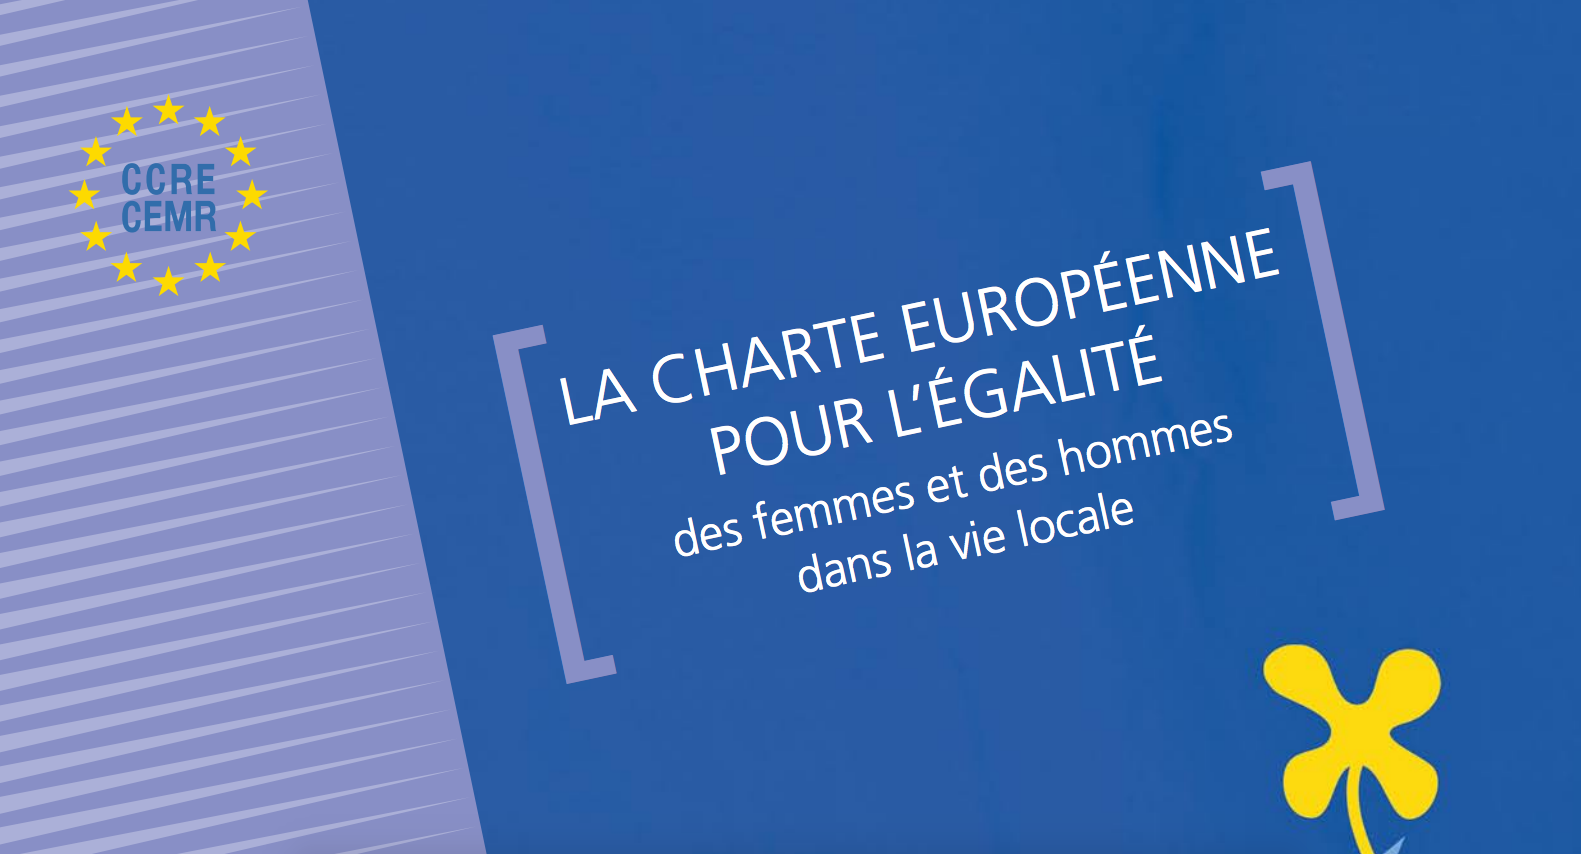 Signature de la charte européenne pour l'égalité des femmes et des hommes dans la vie locale